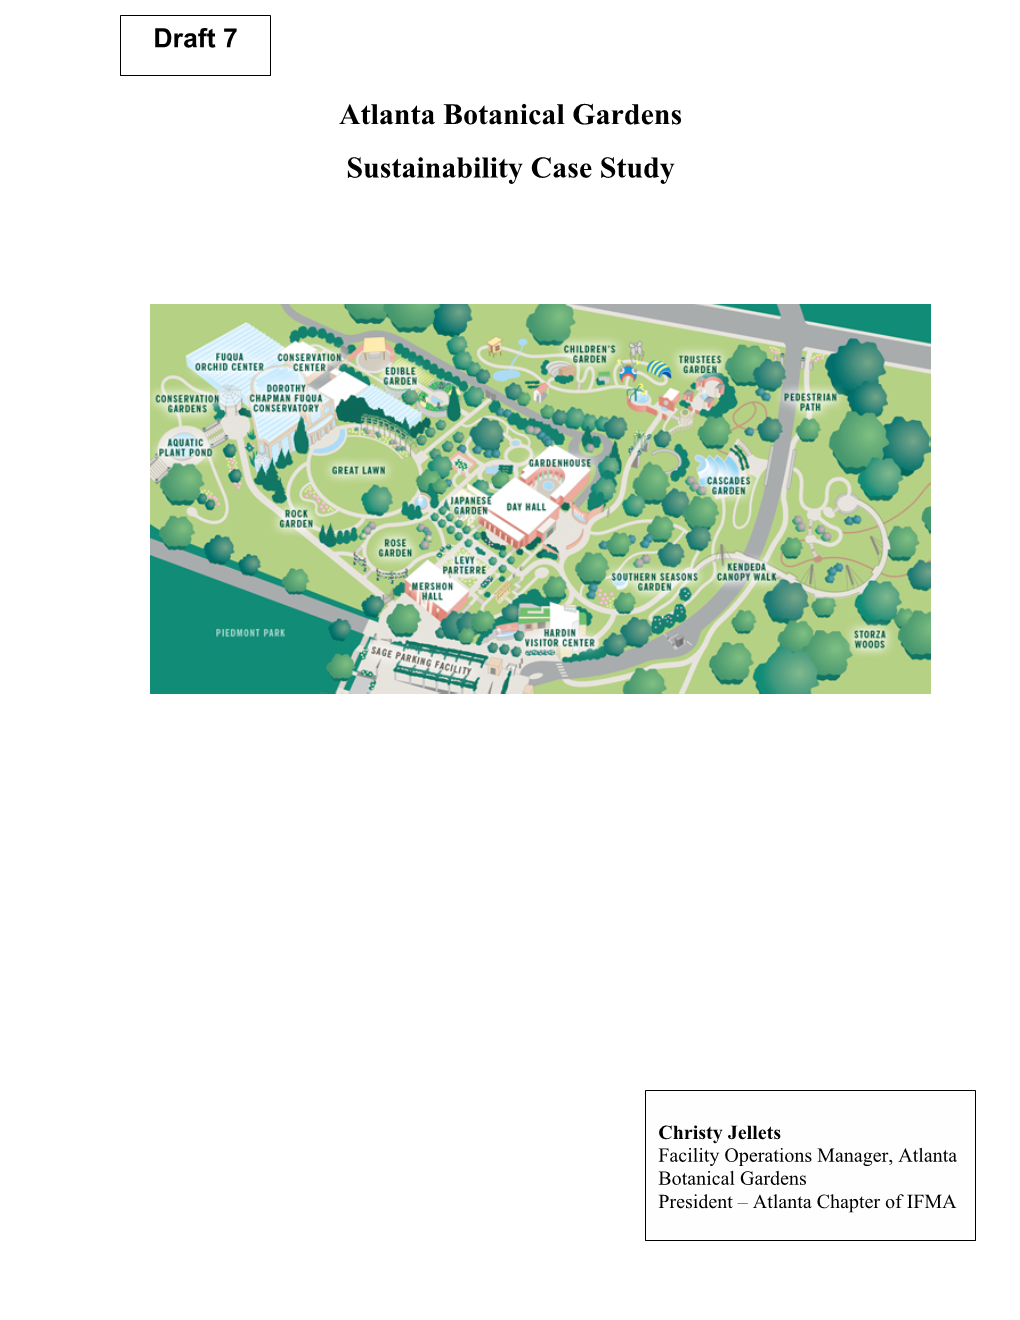 Atlanta Botanical Gardens Sustainability Case Study